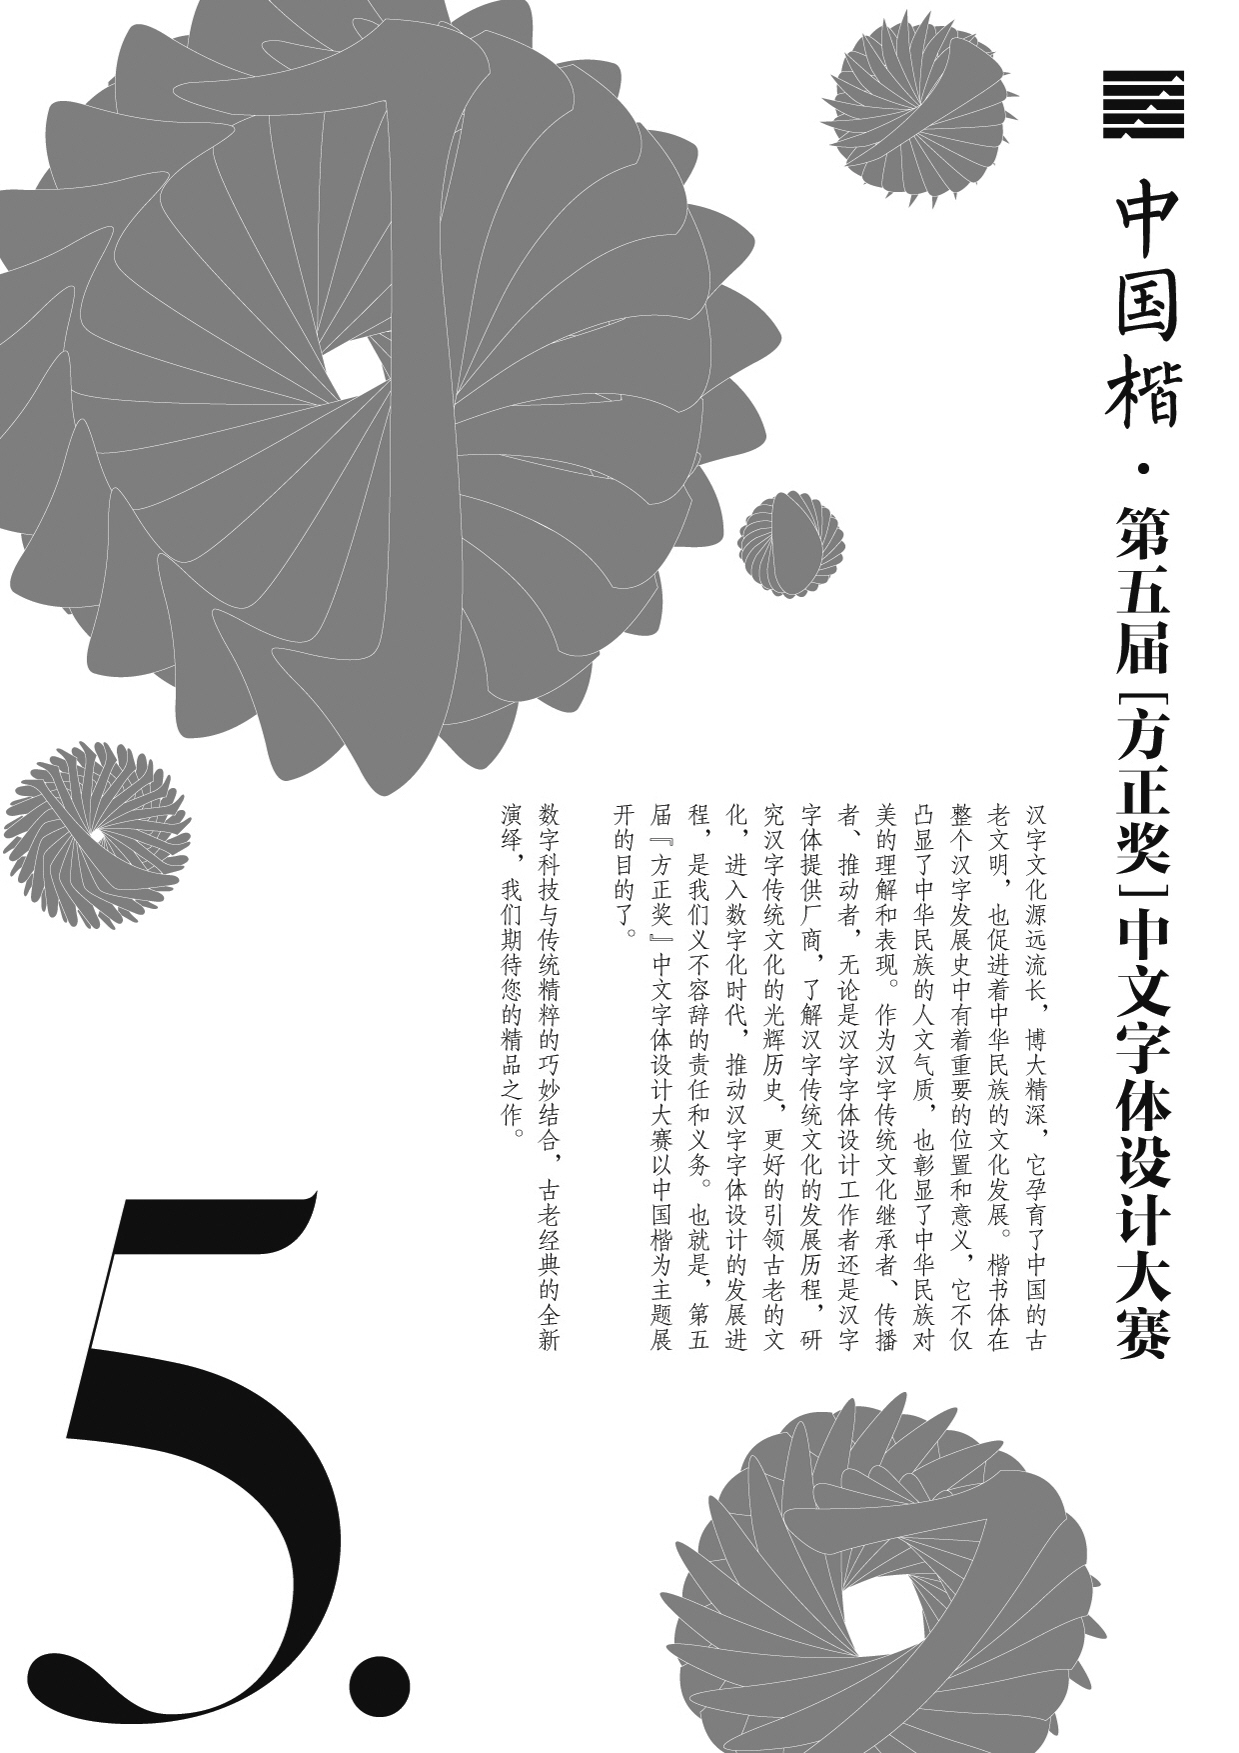 中国楷·第五届“方正奖”中文字体设计大赛征集作品